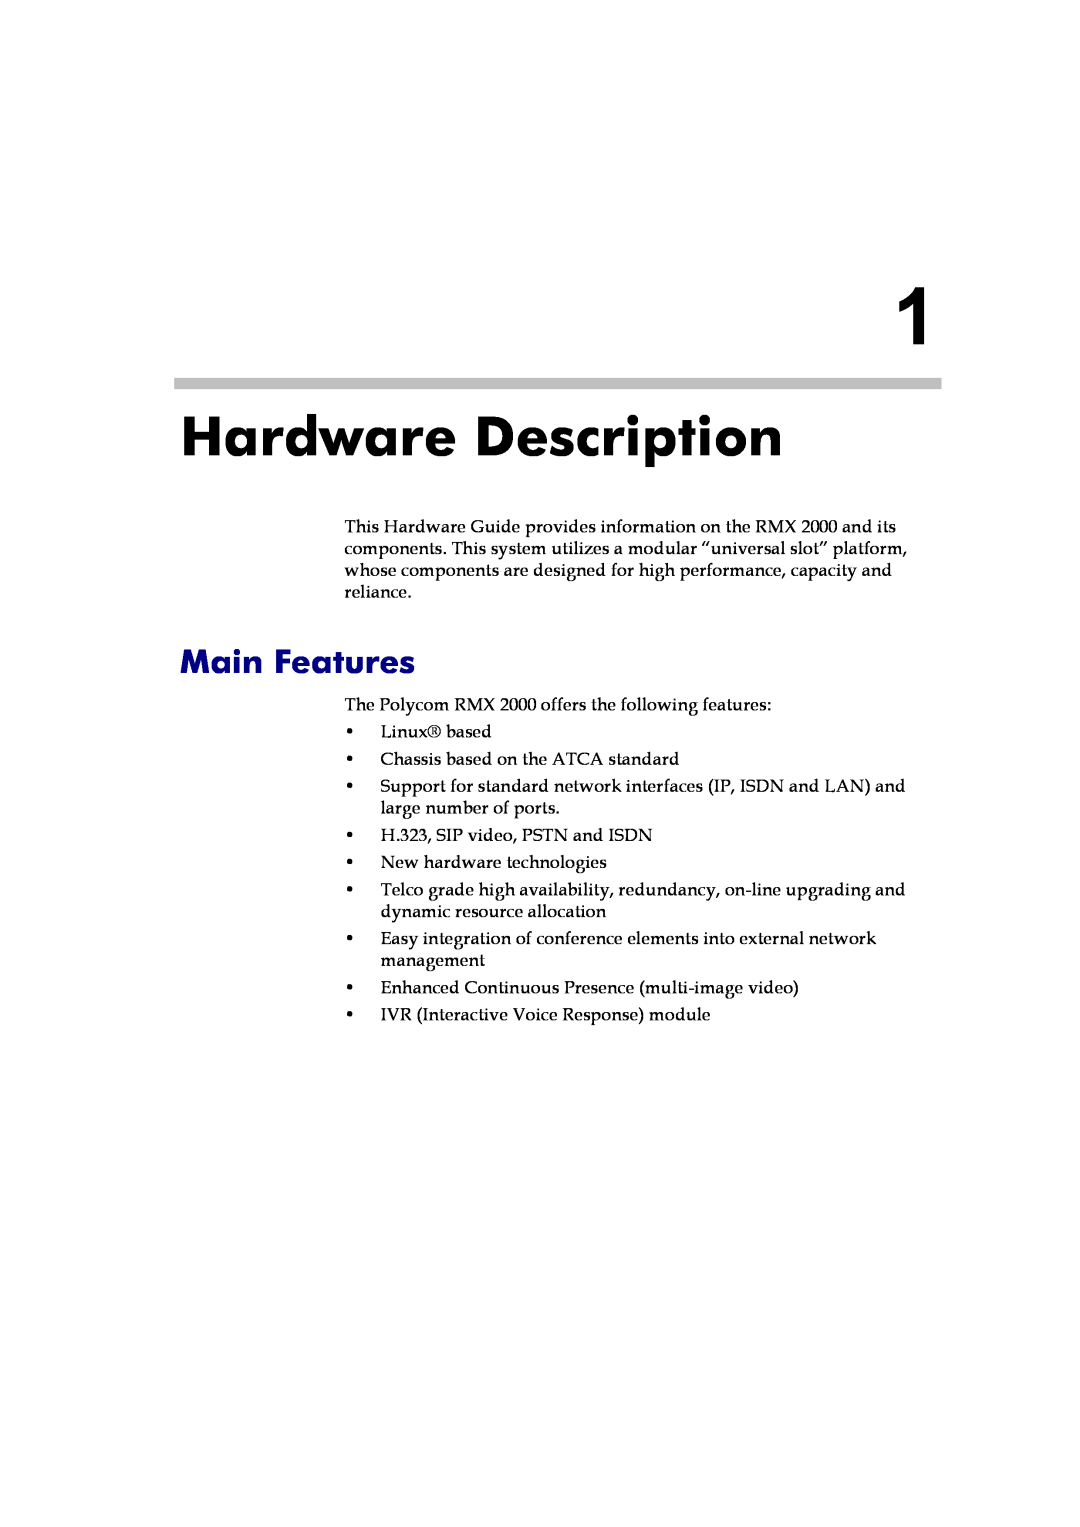 Polycom DOC2558B manual Hardware Description, Main Features 